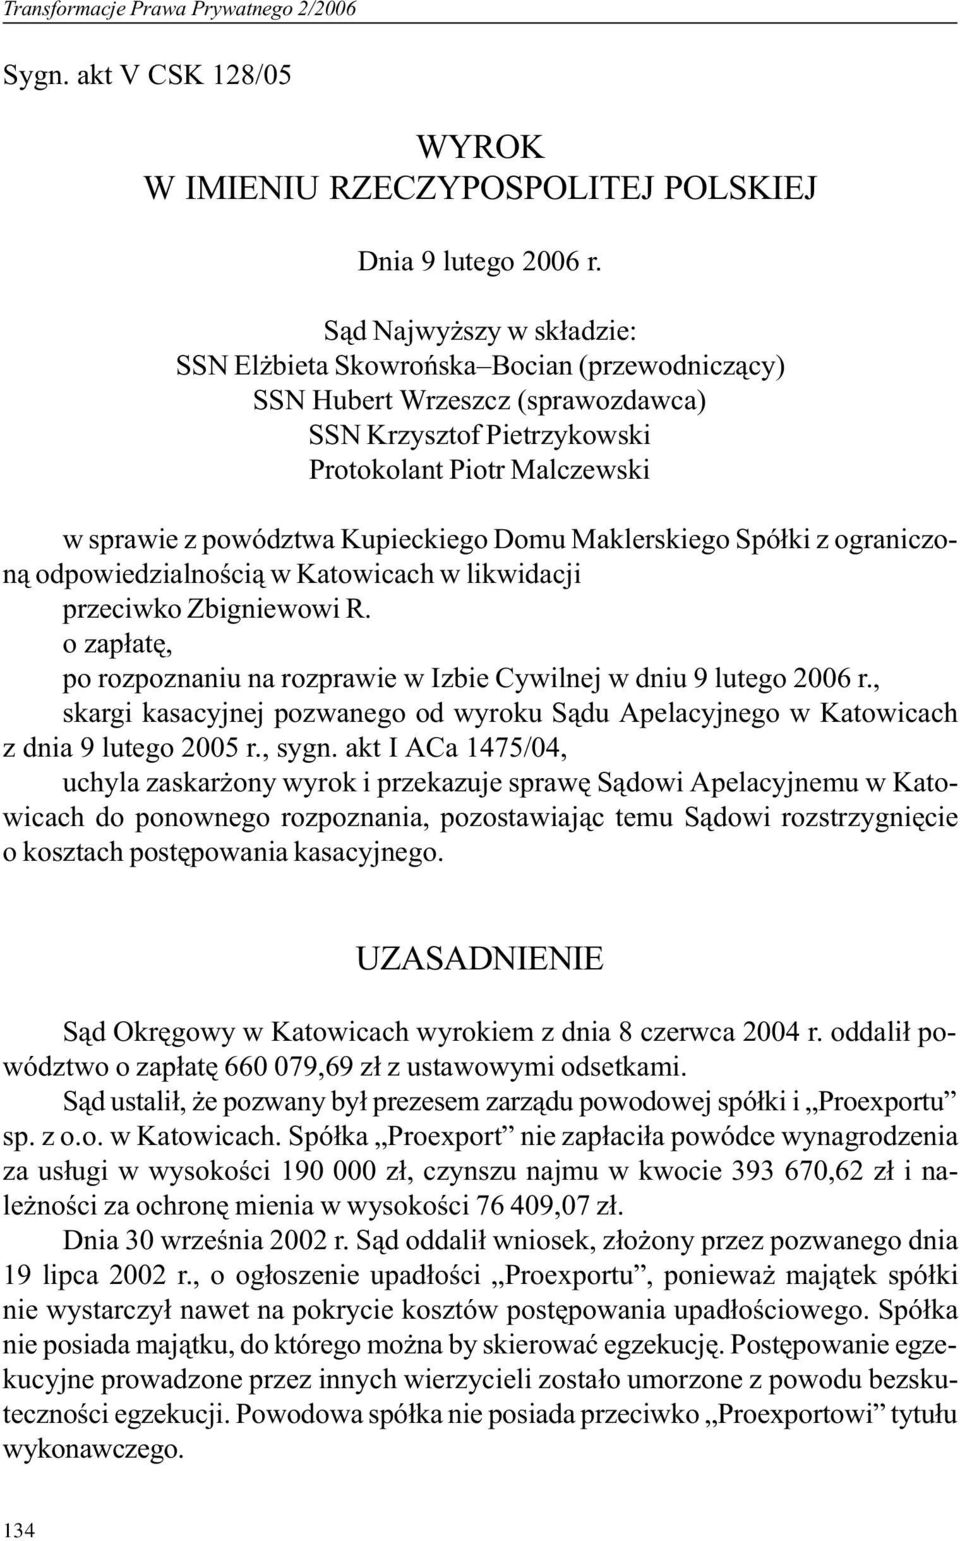 Domu Maklerskiego Spó³ki z ograniczon¹ odpowiedzialnoœci¹ w Katowicach w likwidacji przeciwko Zbigniewowi R. o zap³atê, po rozpoznaniu na rozprawie w Izbie Cywilnej w dniu 9 lutego 2006 r.